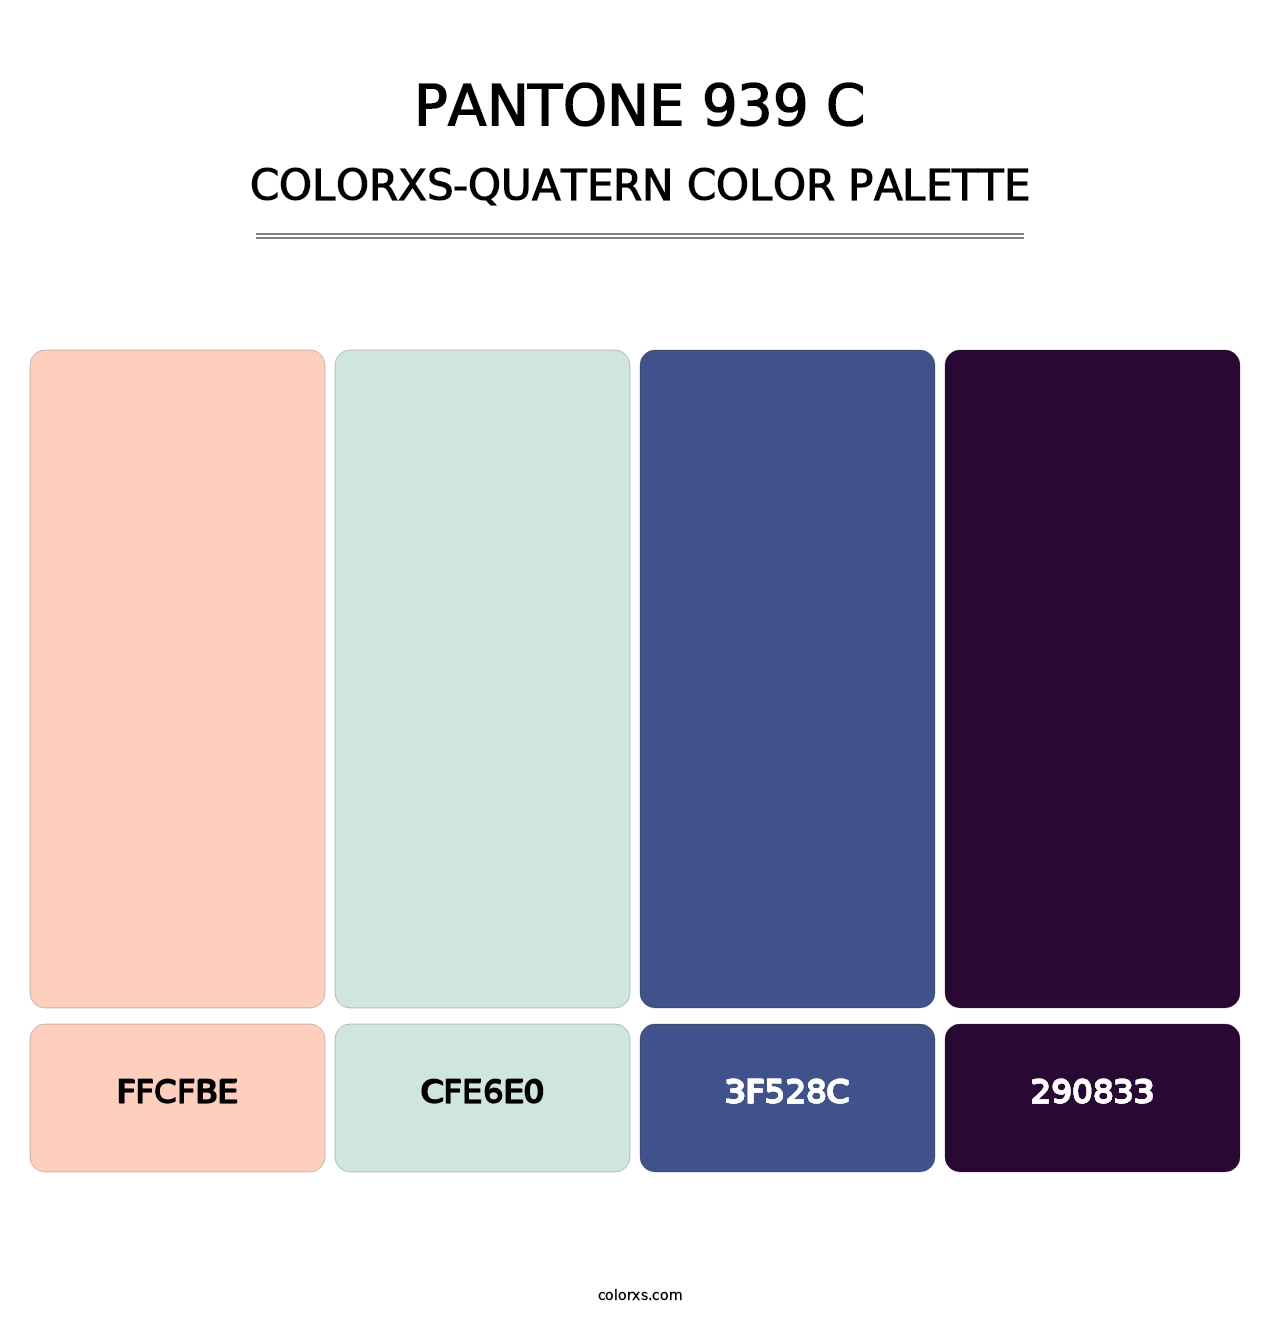 PANTONE 939 C - Colorxs Quatern Palette